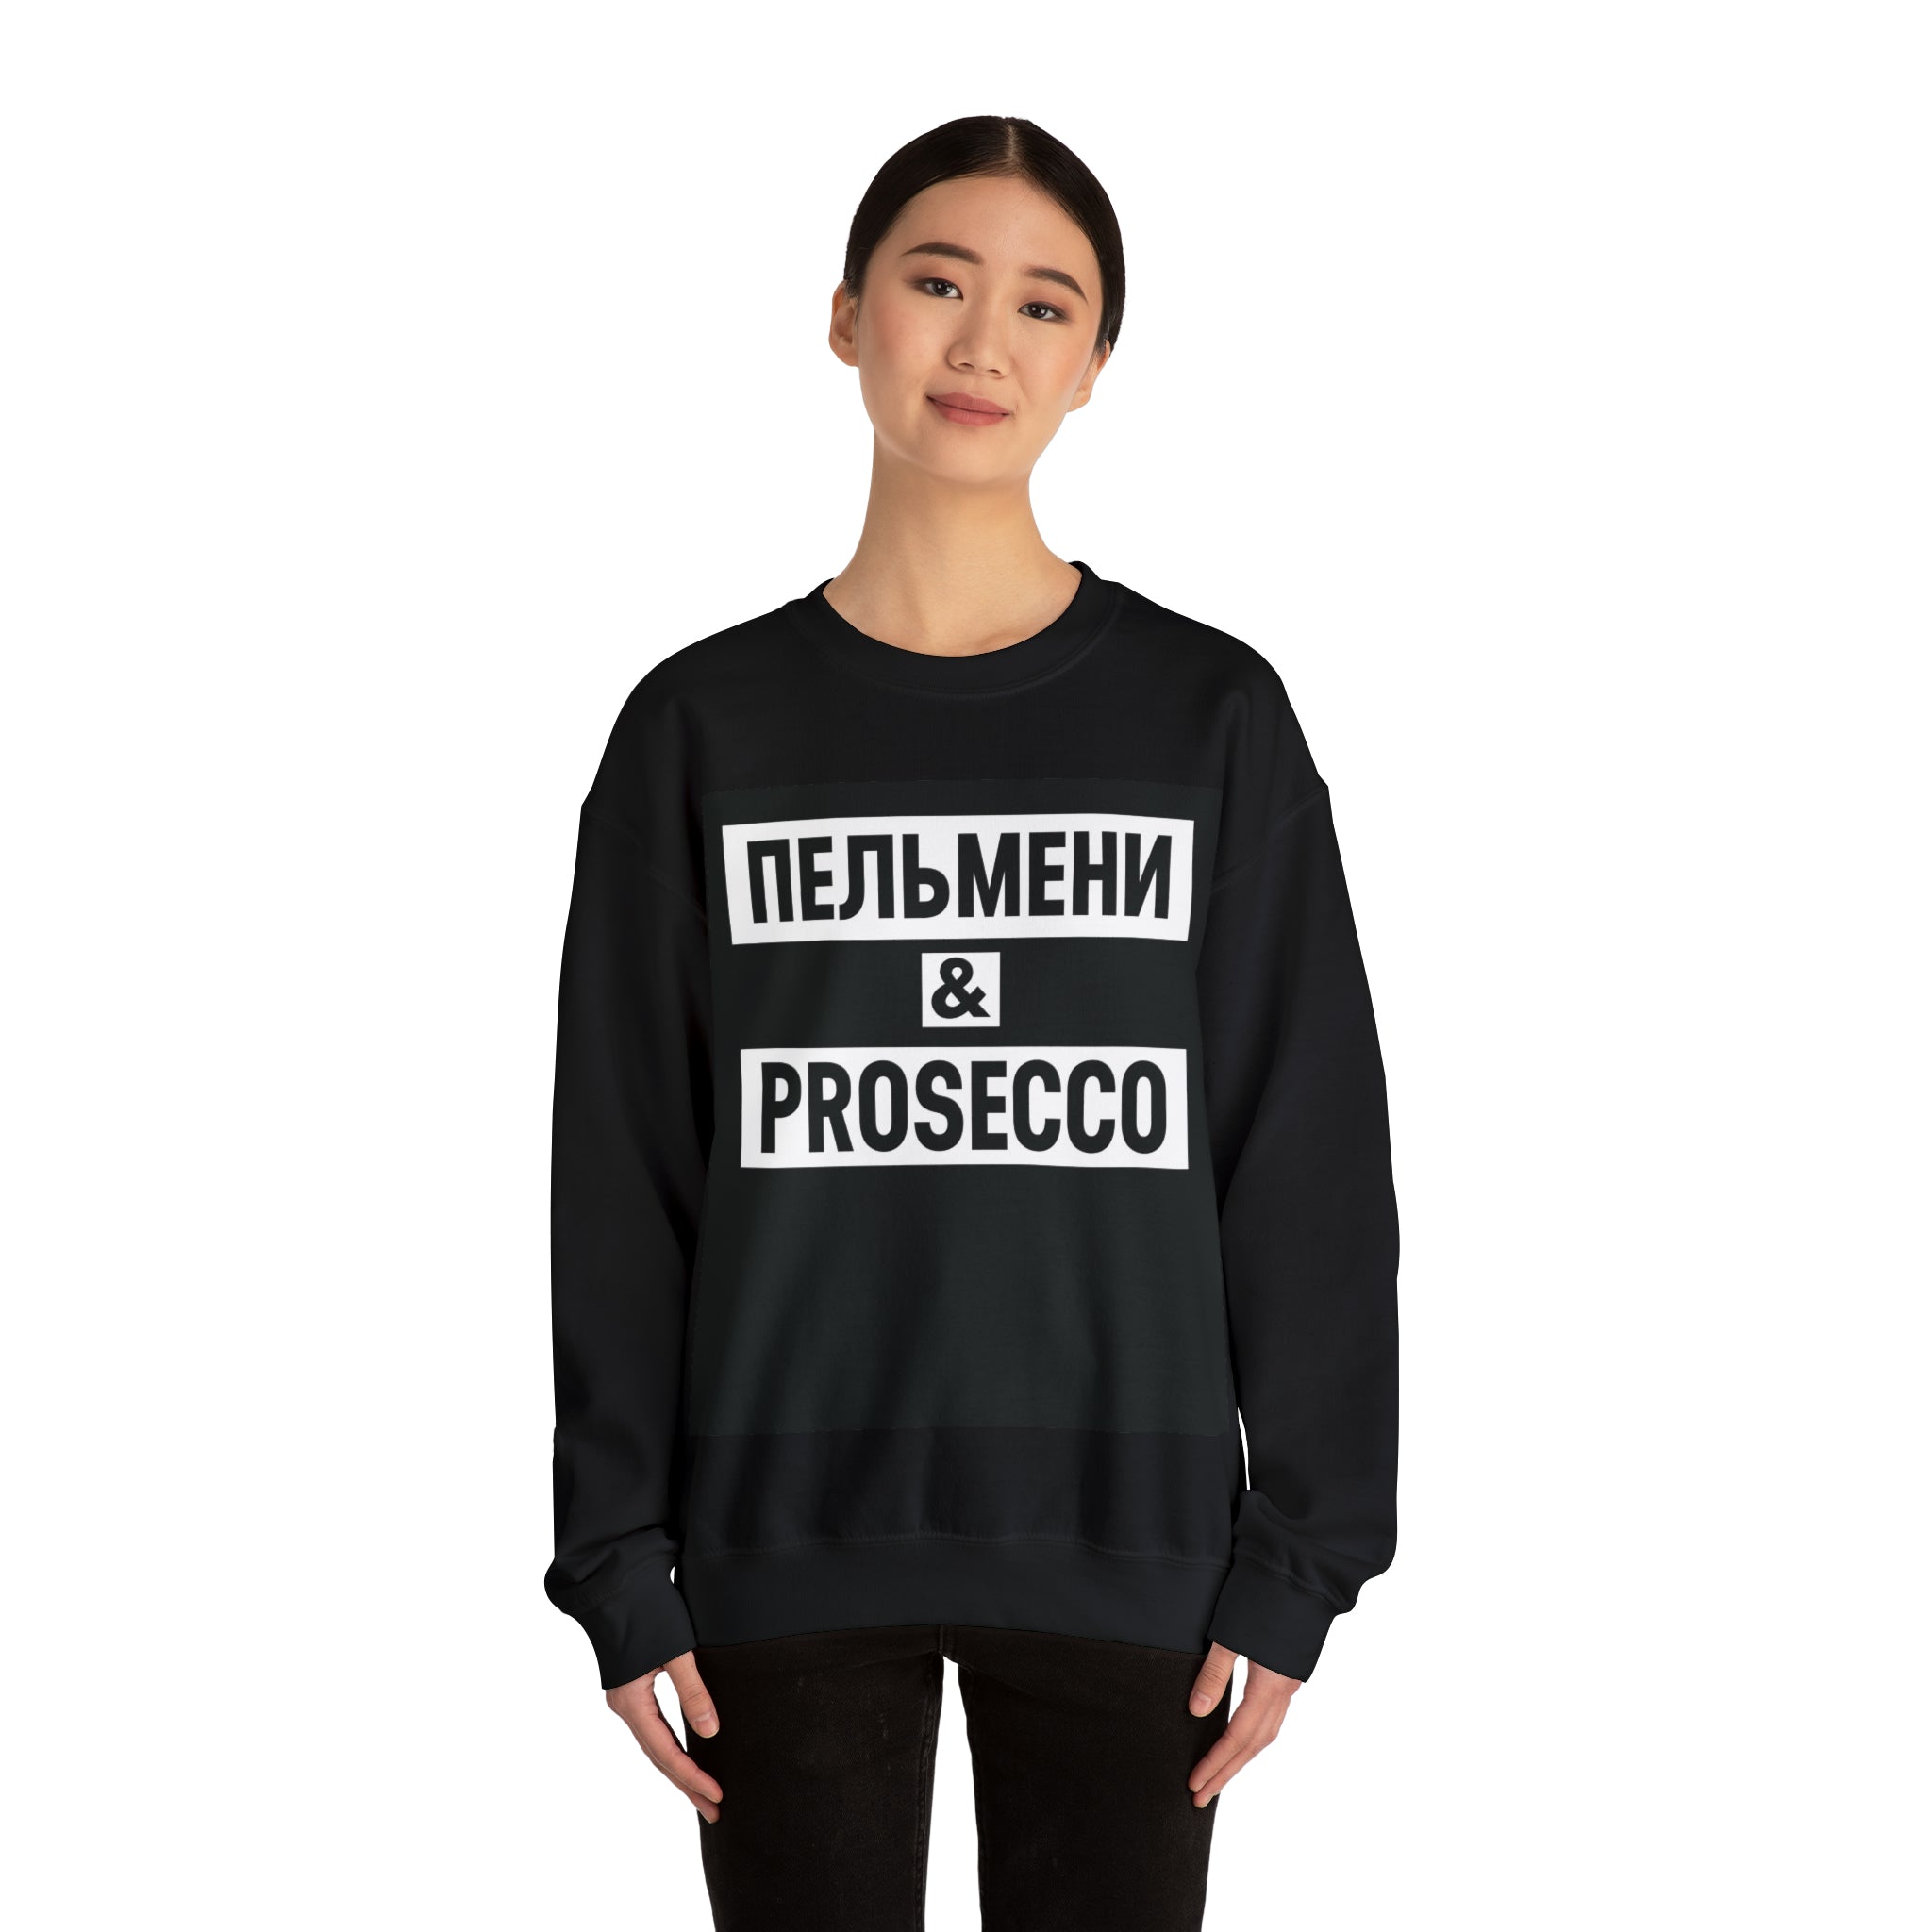 Pelmeni & PROSECCO Unisex Sweatshirt